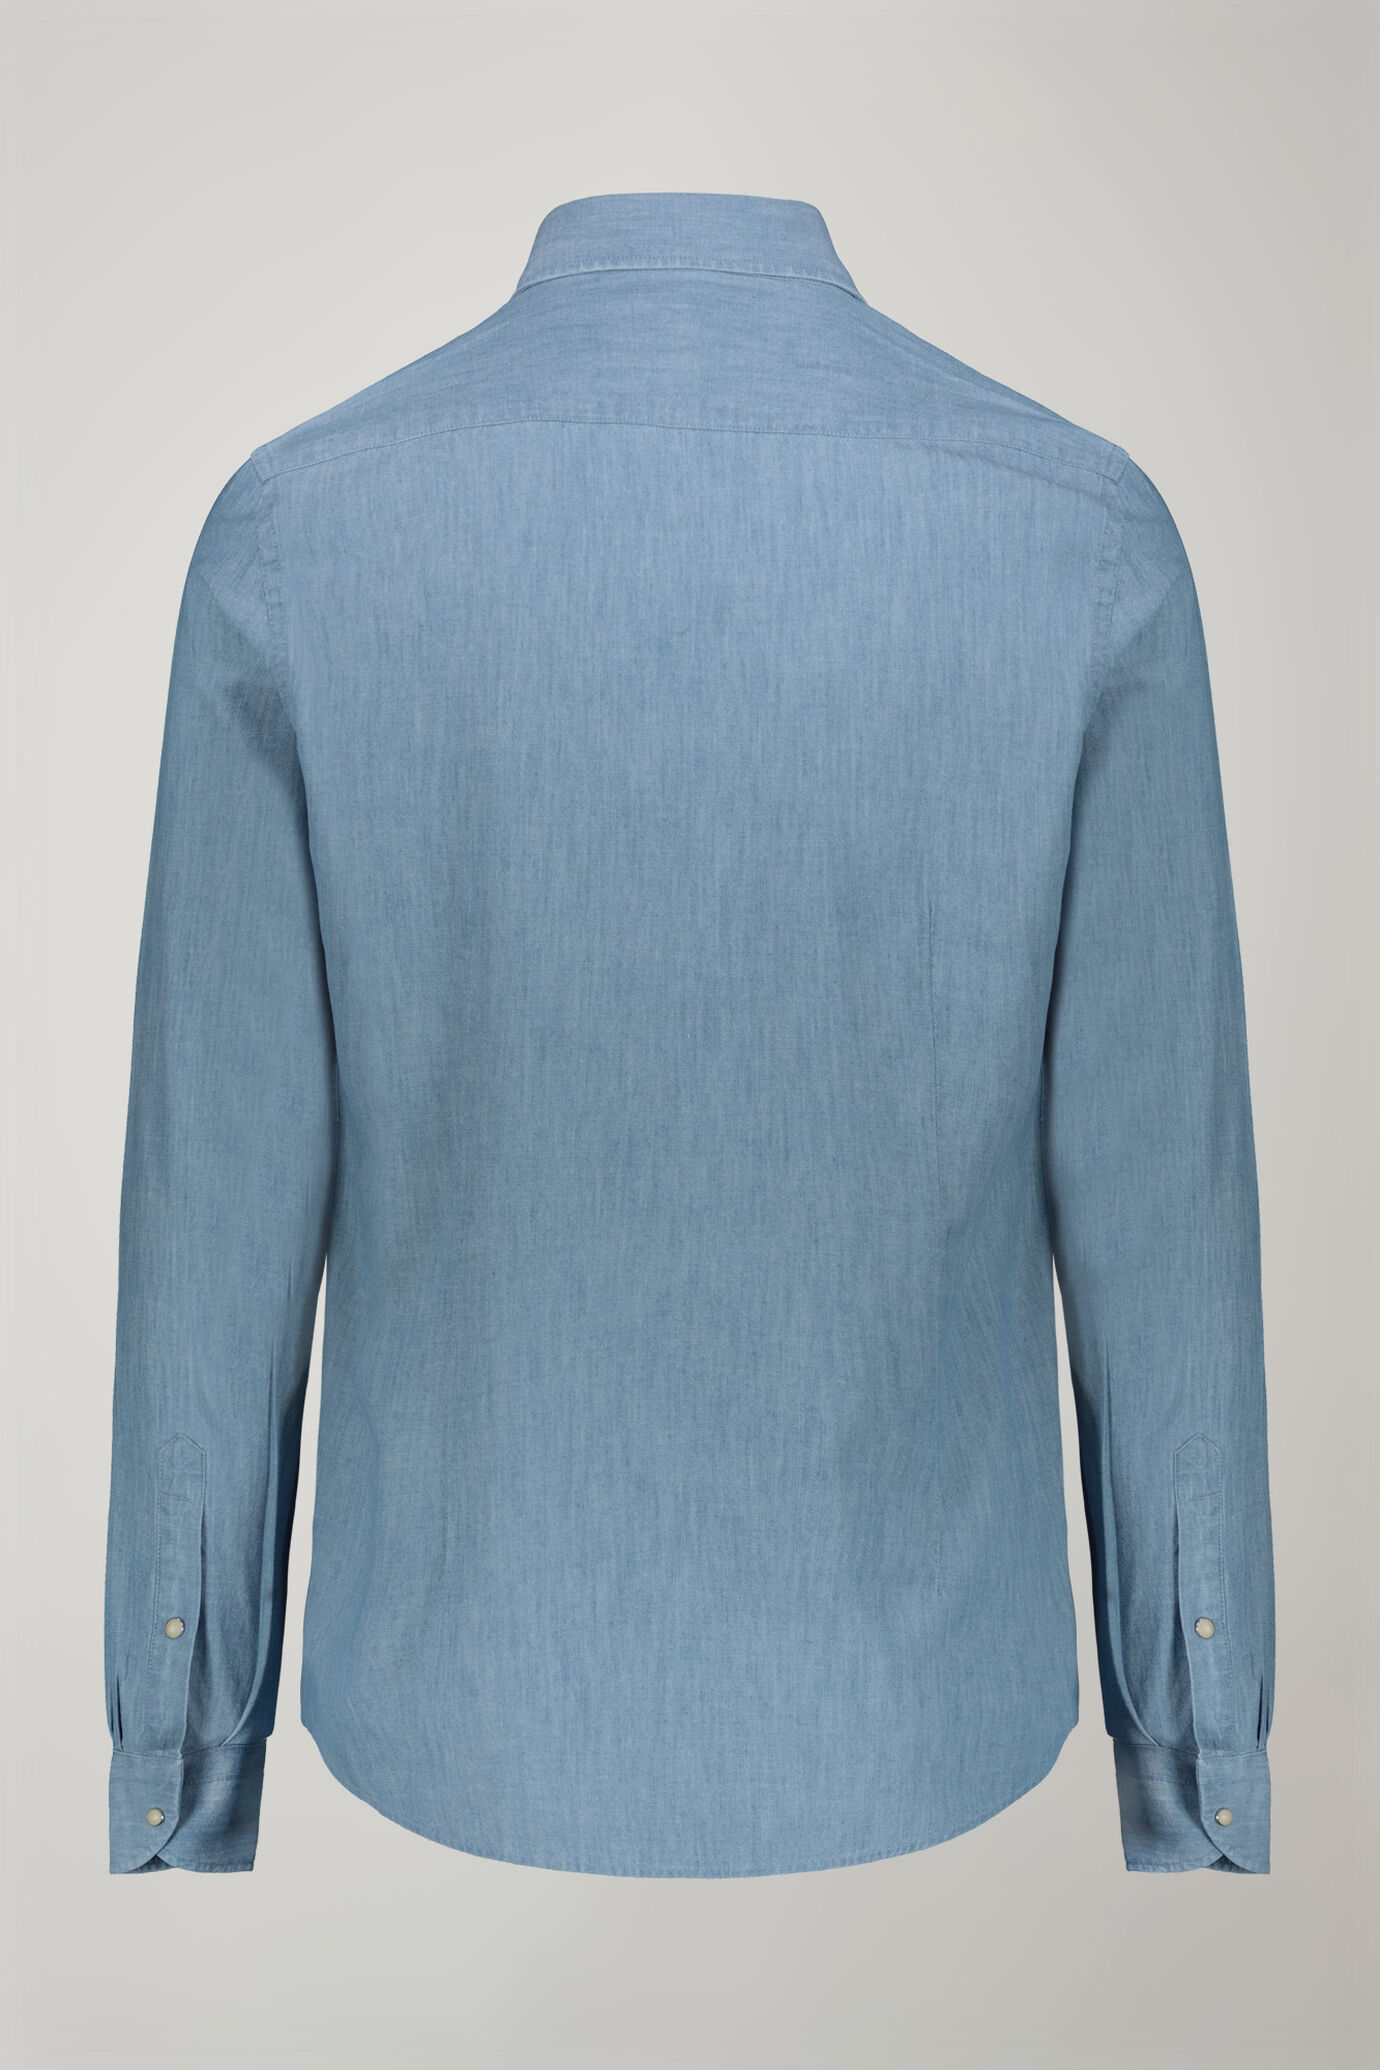 Camicia casual uomo collo classico 100% cotone tessuto chambray denim chiaro comfort fit image number 6